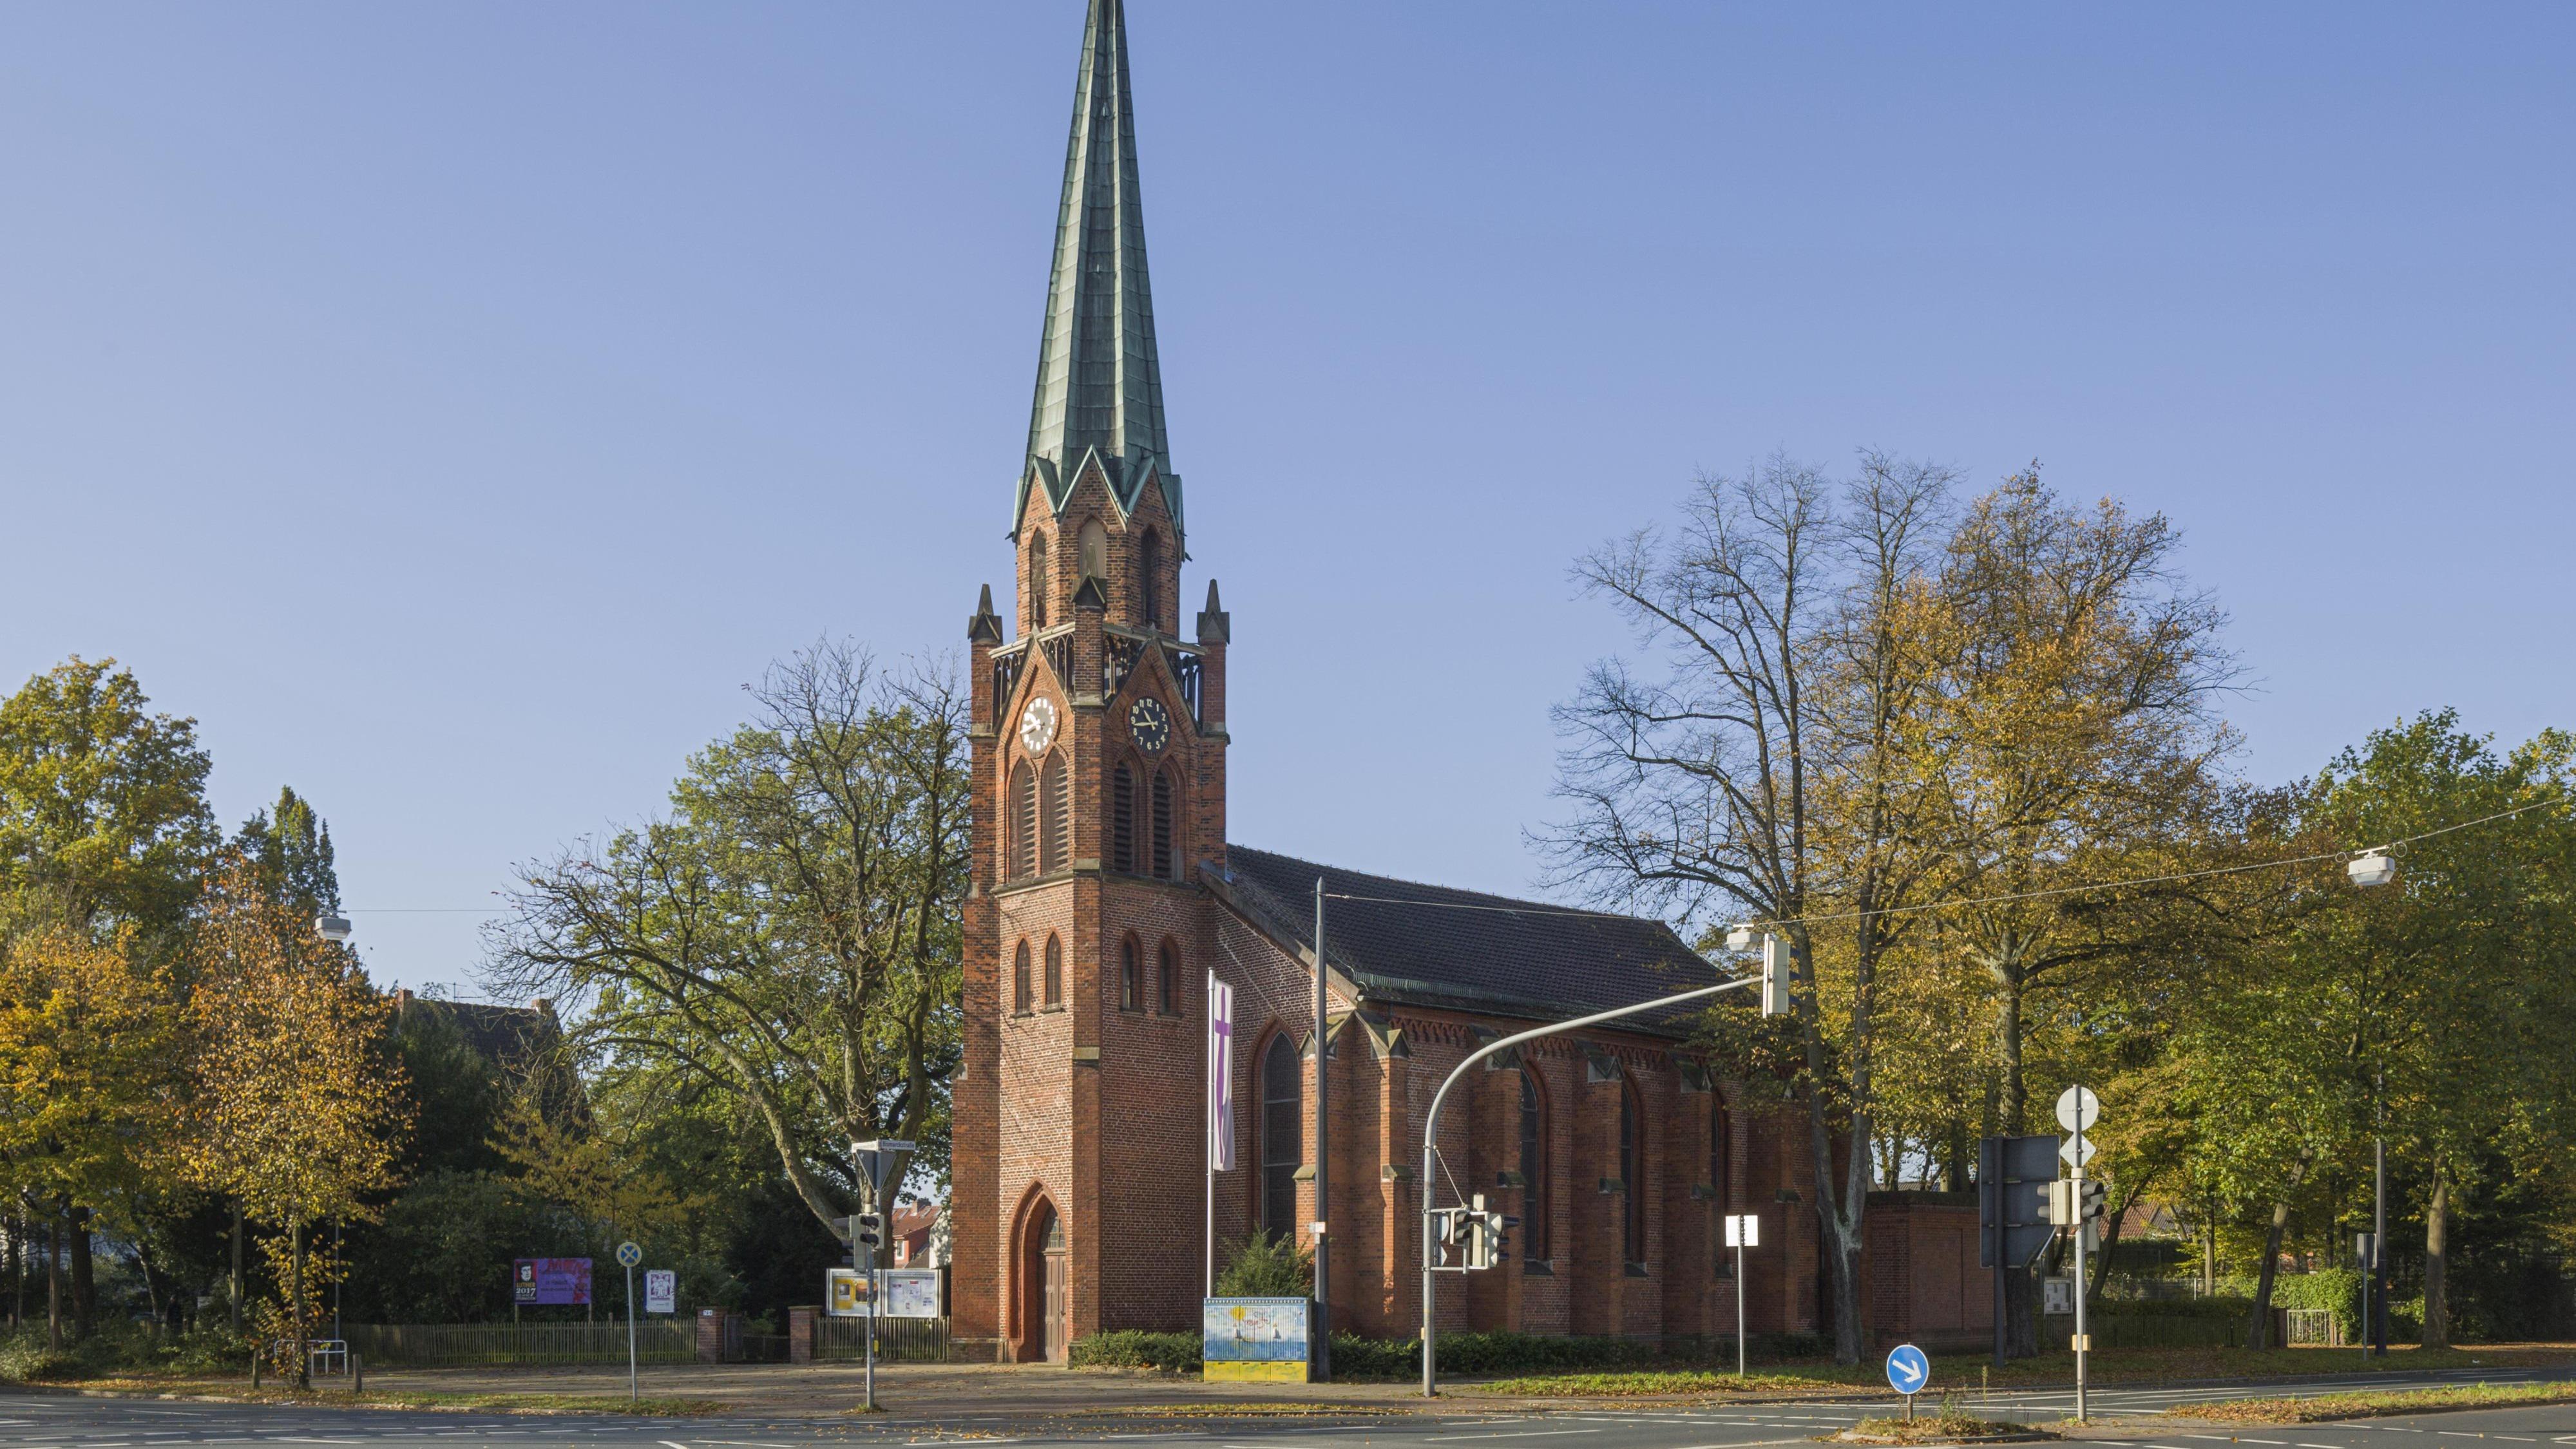 Bilder Alt Hasteder-Kirche - Evangelische Kirchengemeinde Alt-Hastedt